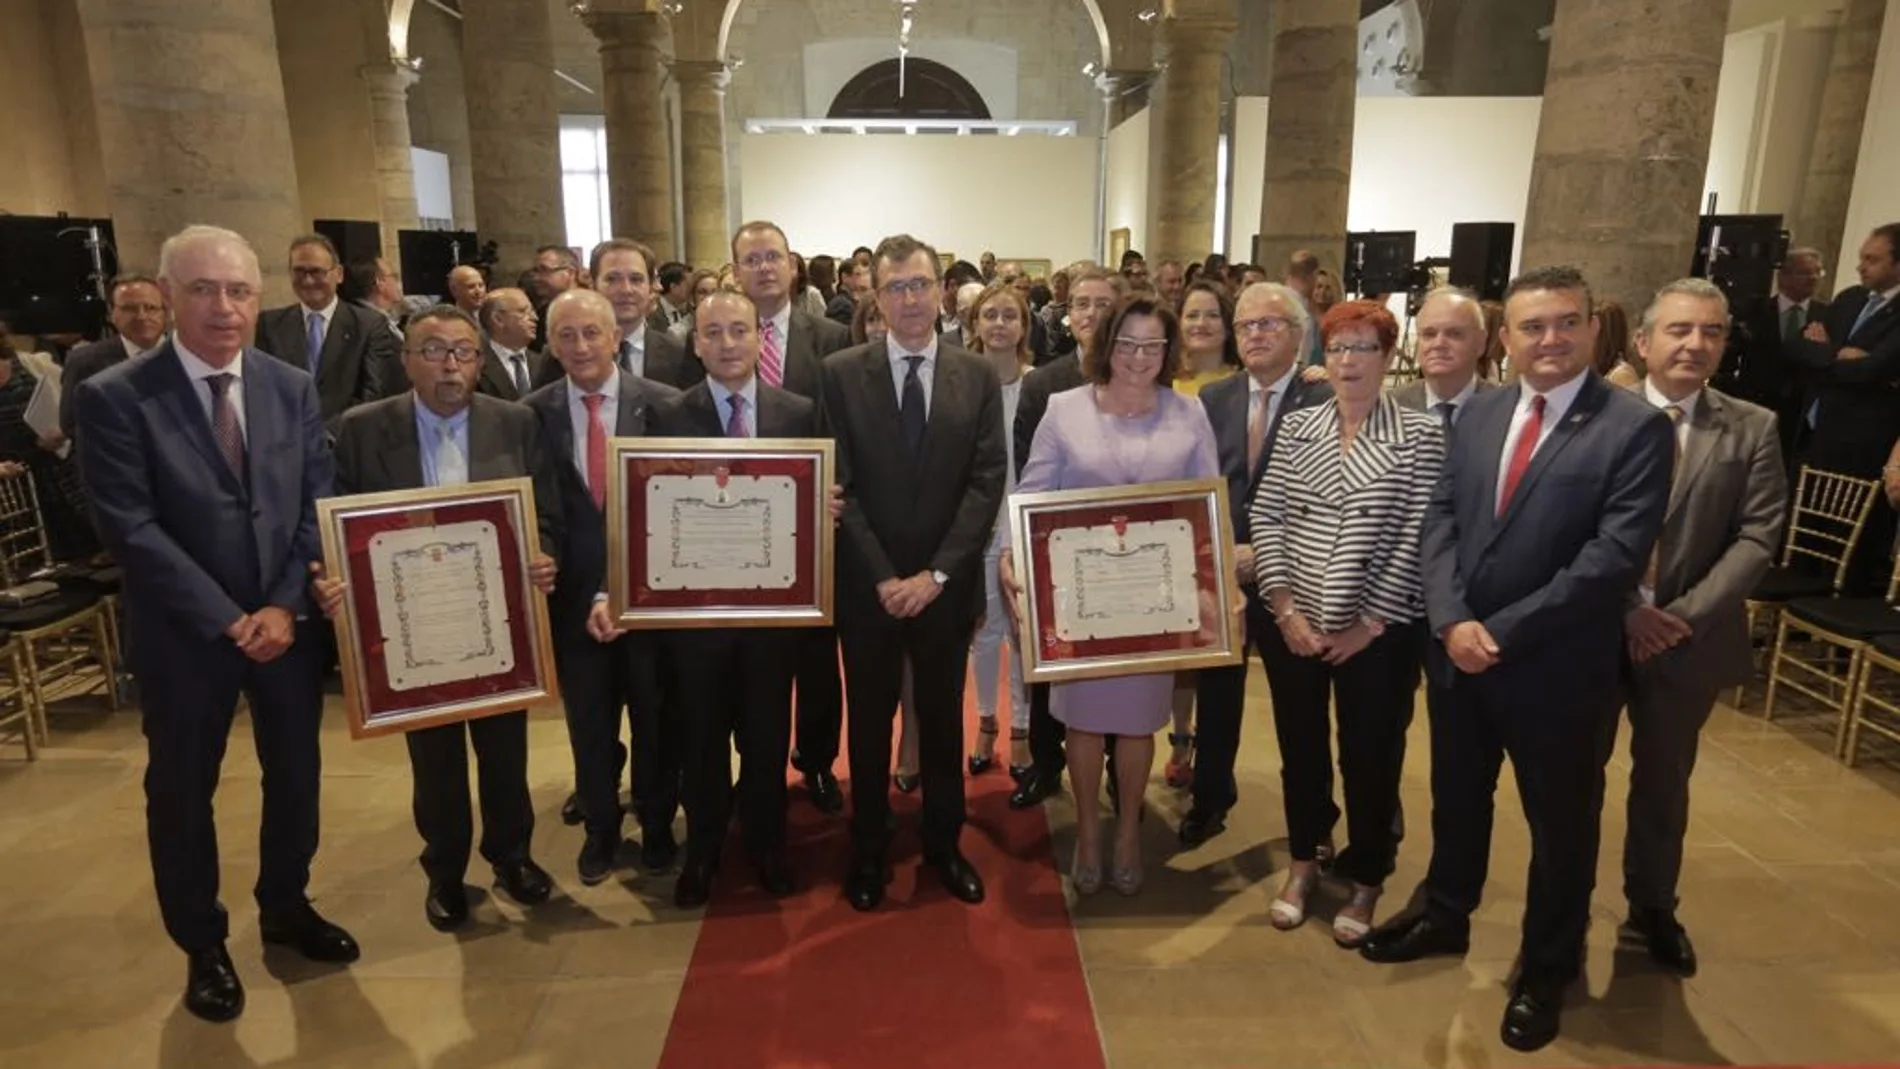 El alcalde, José Ballesta, junto a los galardonados en la conmemoración del Dia de la Ciudad de Murcia en el Palacio del Almudí